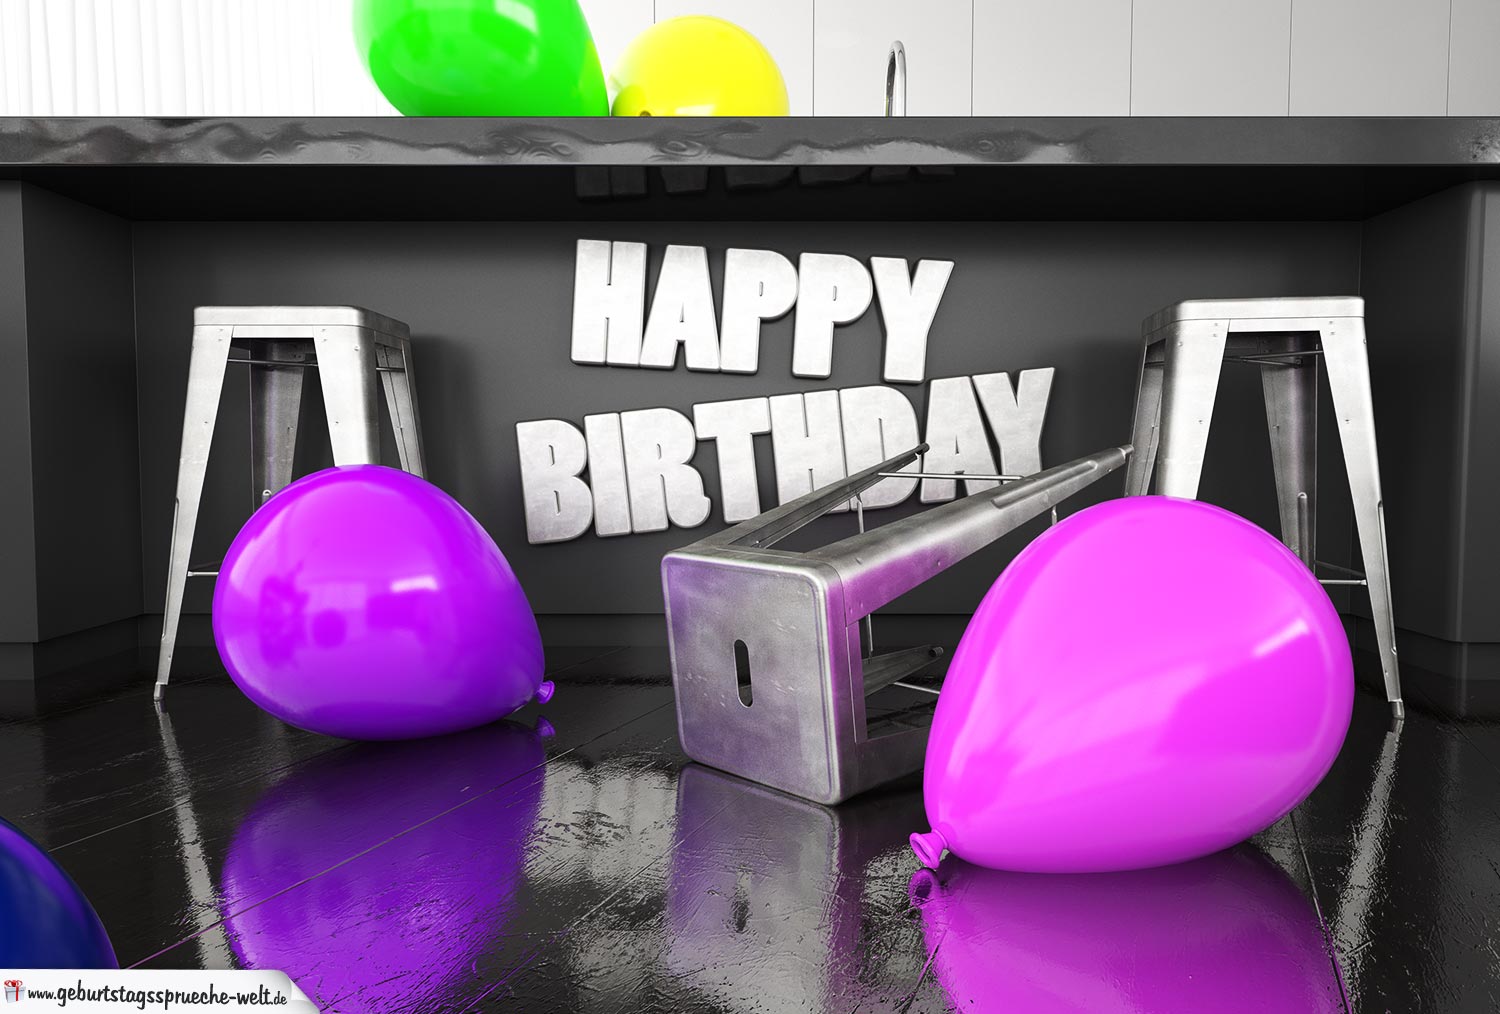 Happy Birthday Karte kostenlos - In der Küche Geburtstag feiern